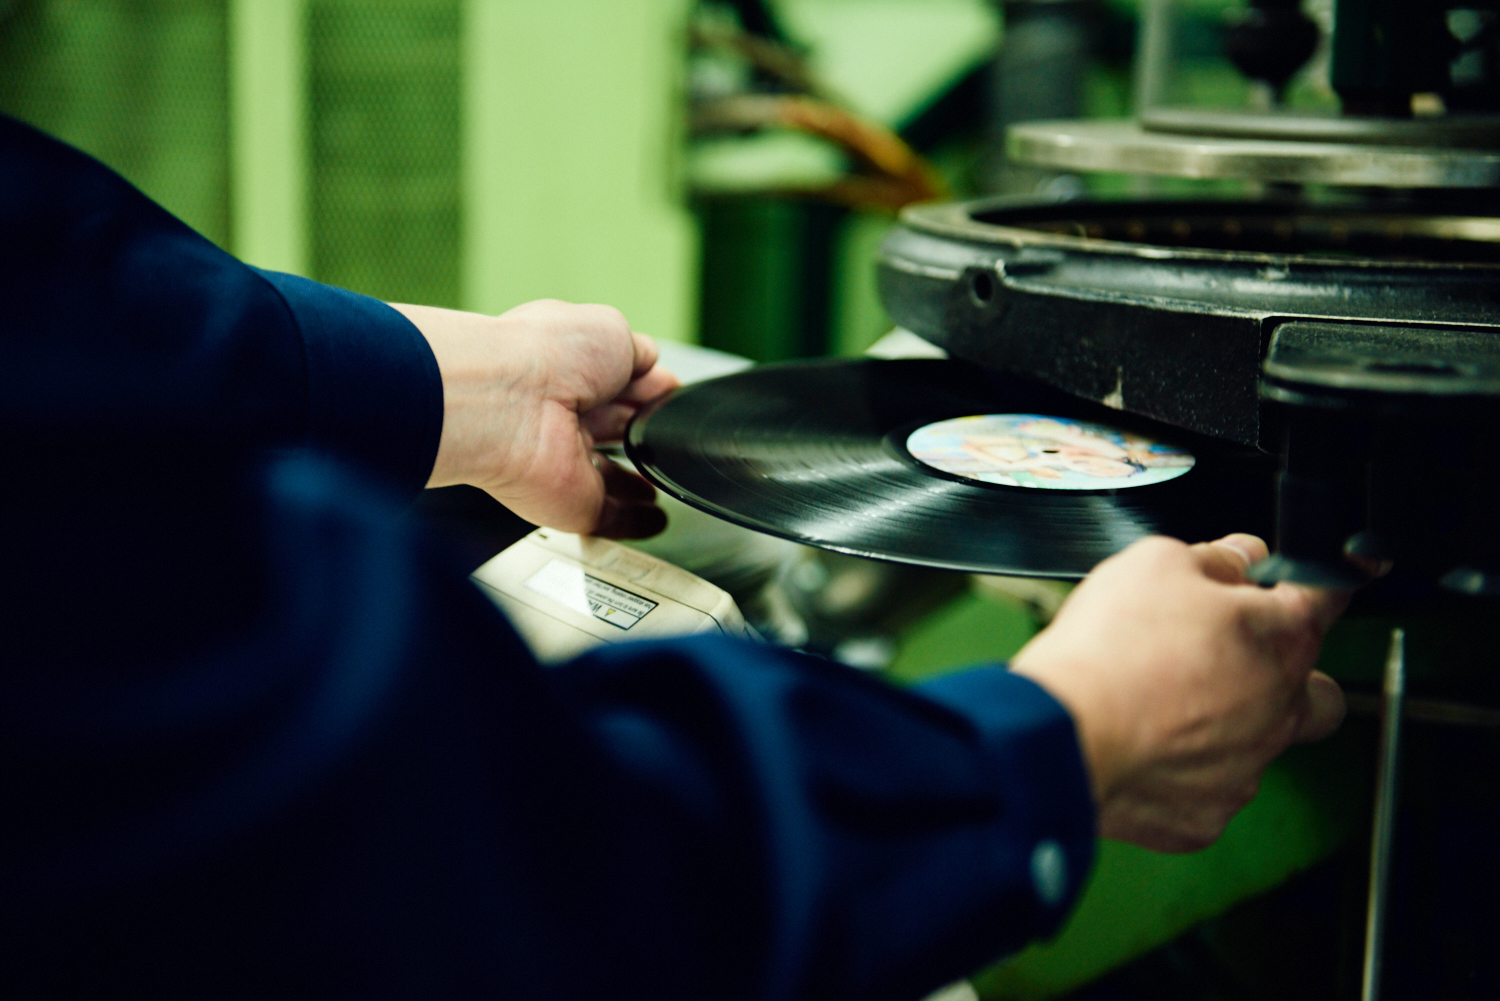 一枚一枚、人の手で確認され市場へと流通していくレコード。レコード工場はクラフトマンシップがひかるモノづくりの現場だ。